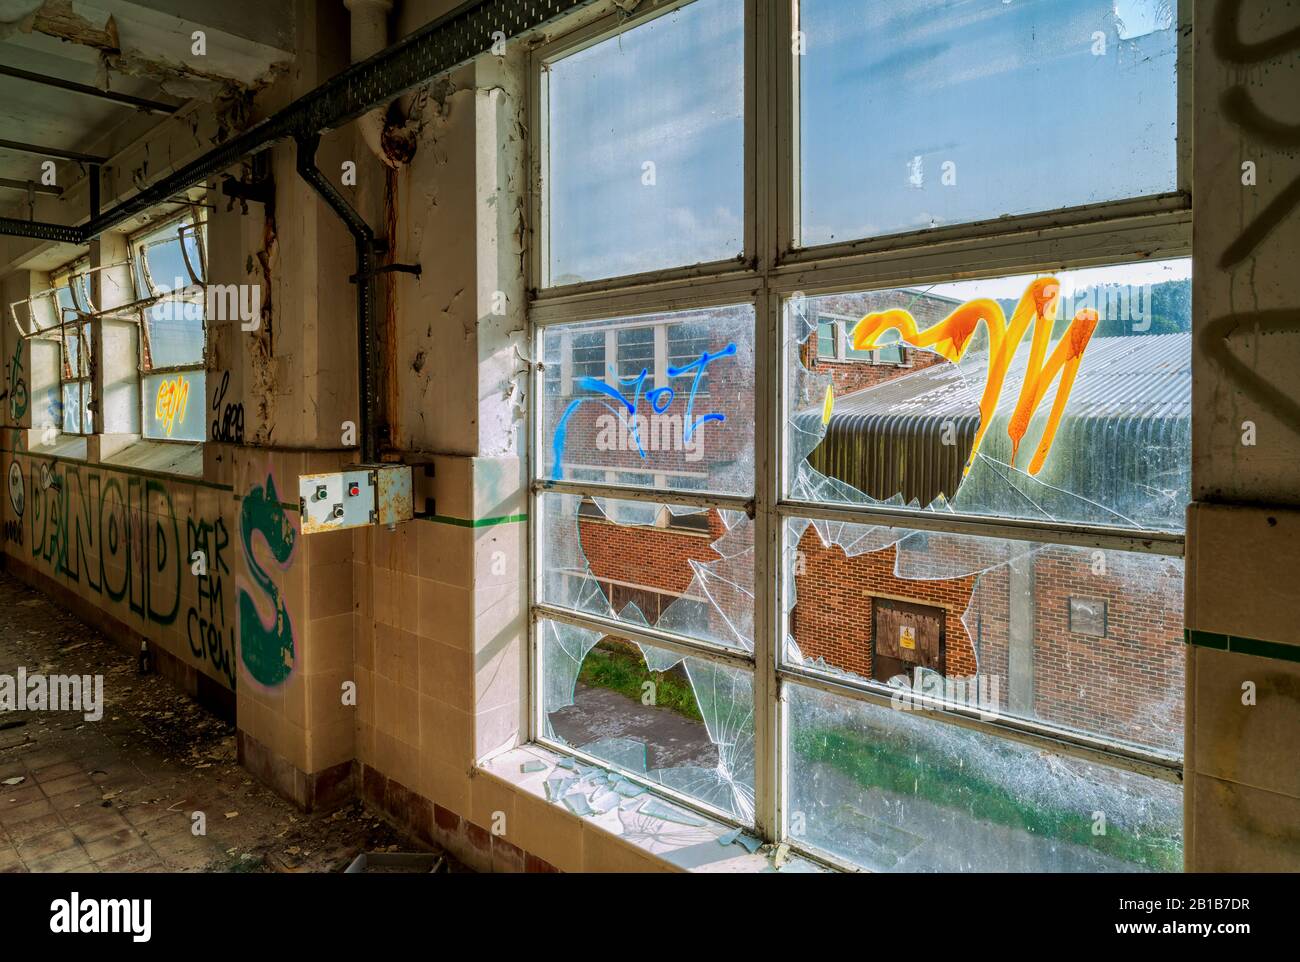 Les bâtiments urbains abandonnés et négligés, avec des graffitis et des fenêtres écrasées, désertés, oubliés, peuvent vaporiser de l'art Banque D'Images